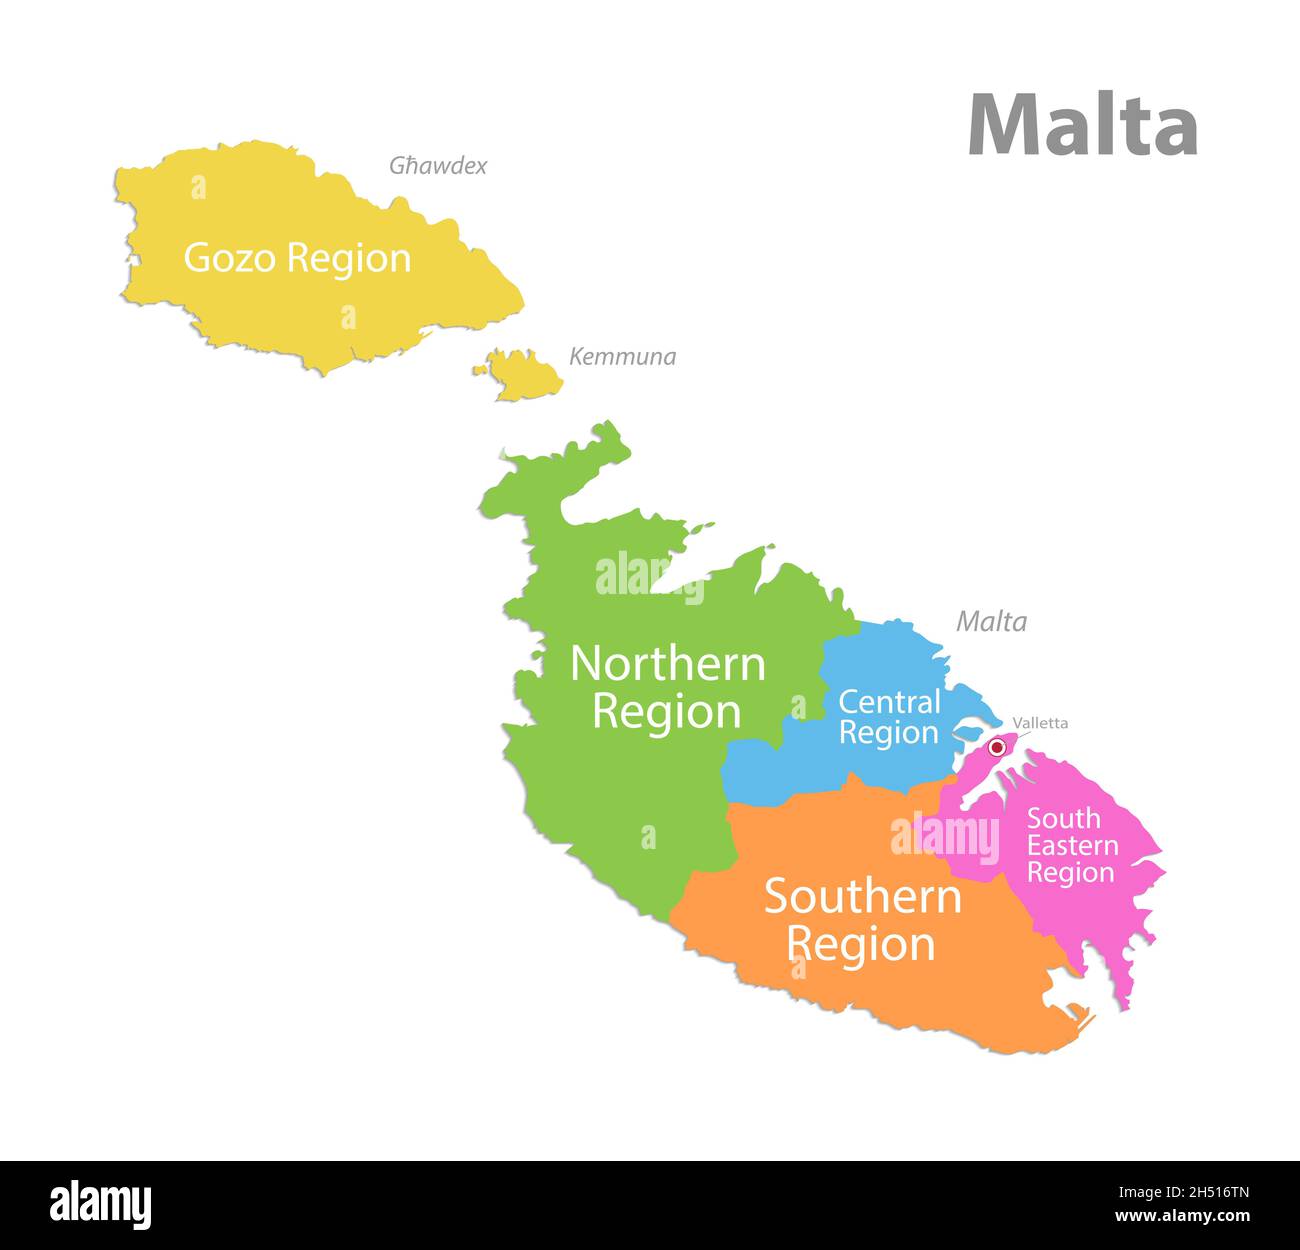 Malta Karte, Aktuelle Regionen mit Namen, Politik von Malta, isoliert auf weißem Hintergrund Vektor Stock Vektor